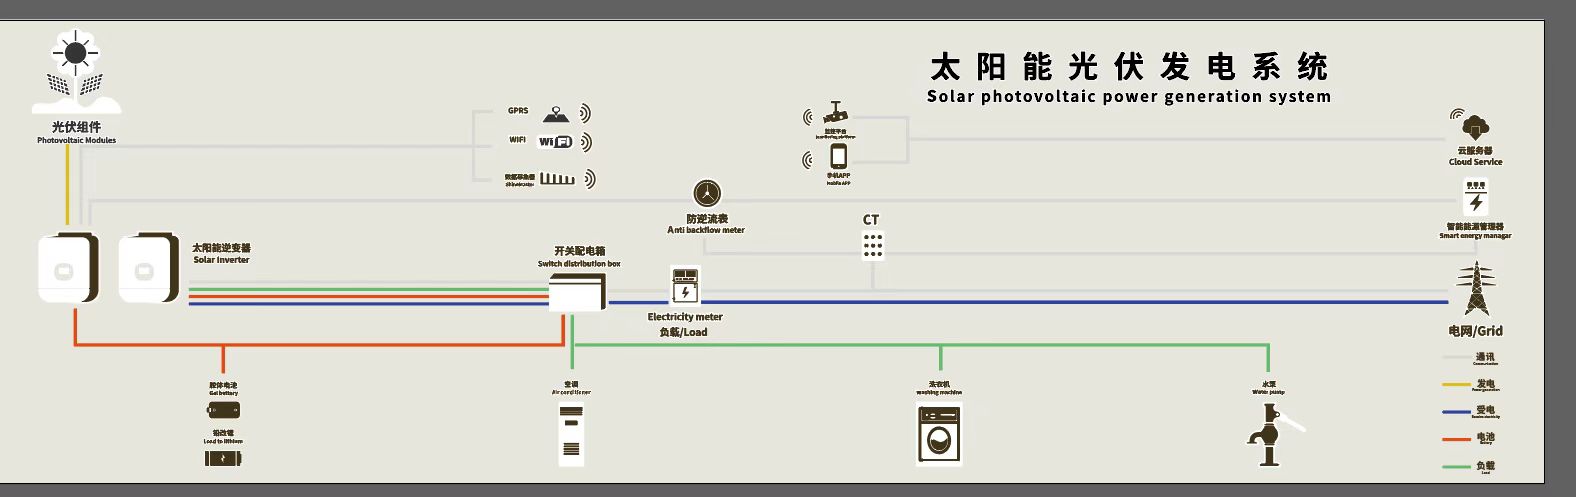 Sistema de energía solar de 5kw Red de compensación completa para uso doméstico